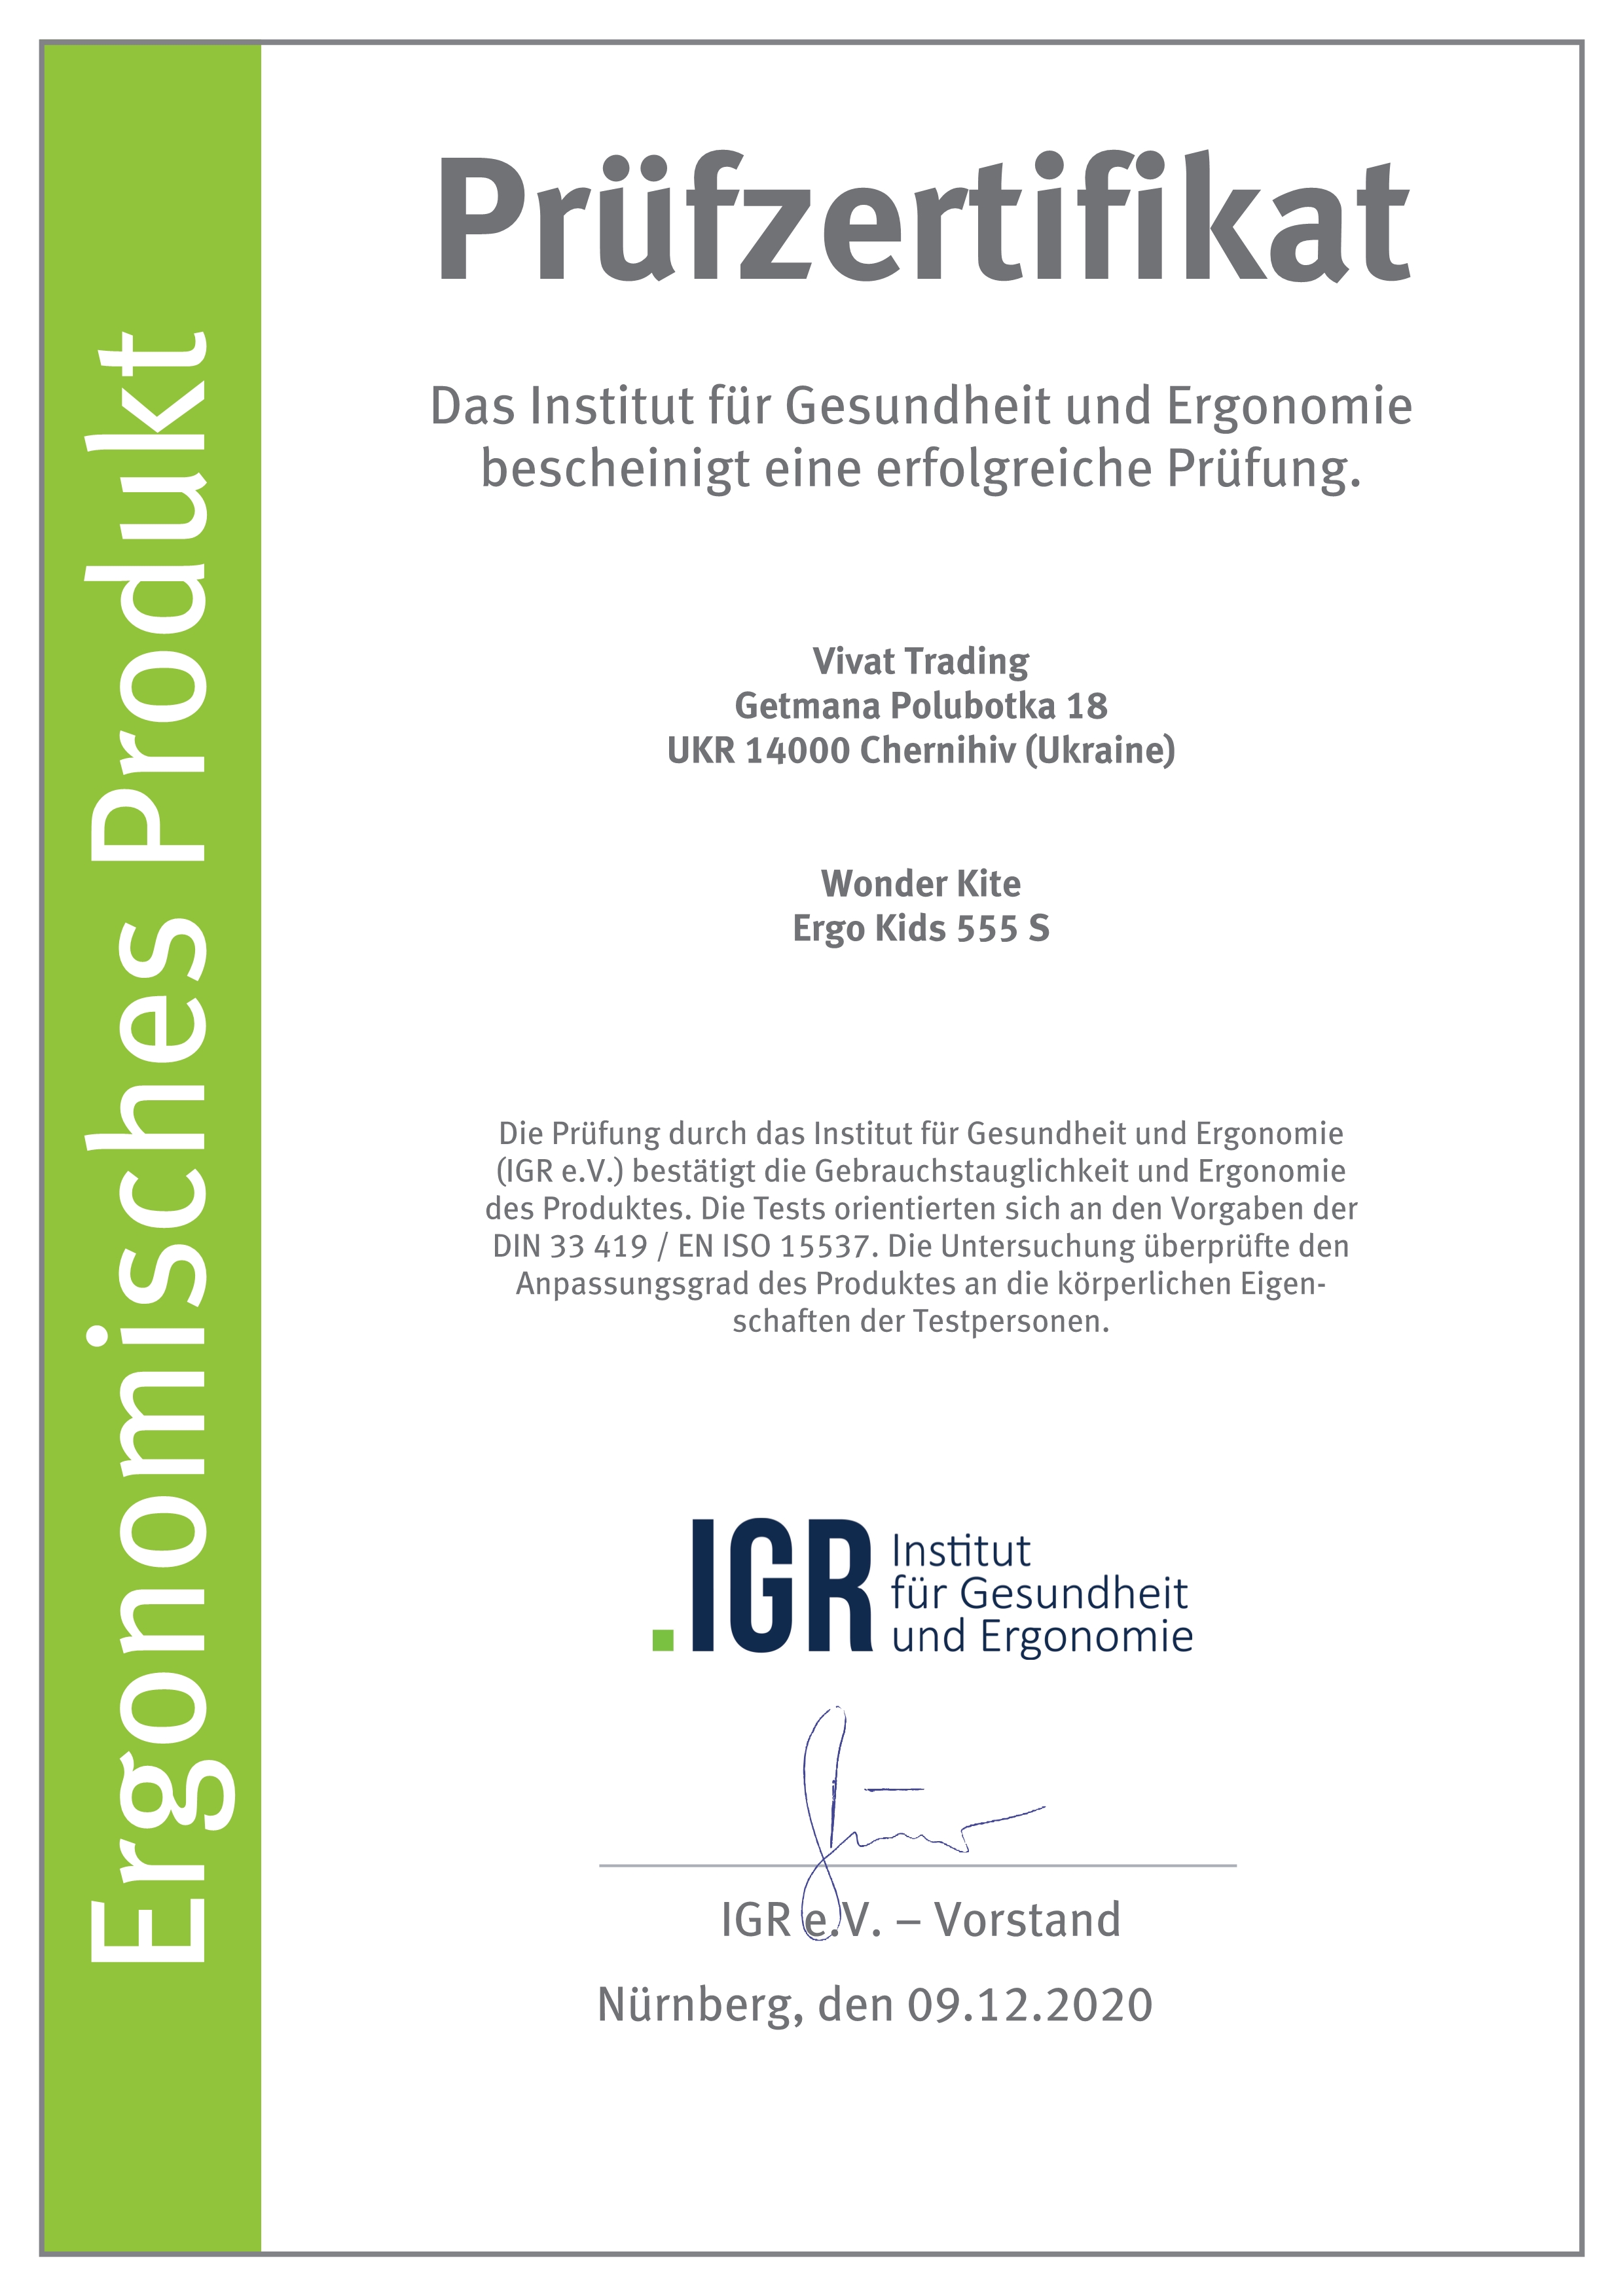 Сертифікат Німецького інституту здоров'я і ергономіки IGR - модель 555S